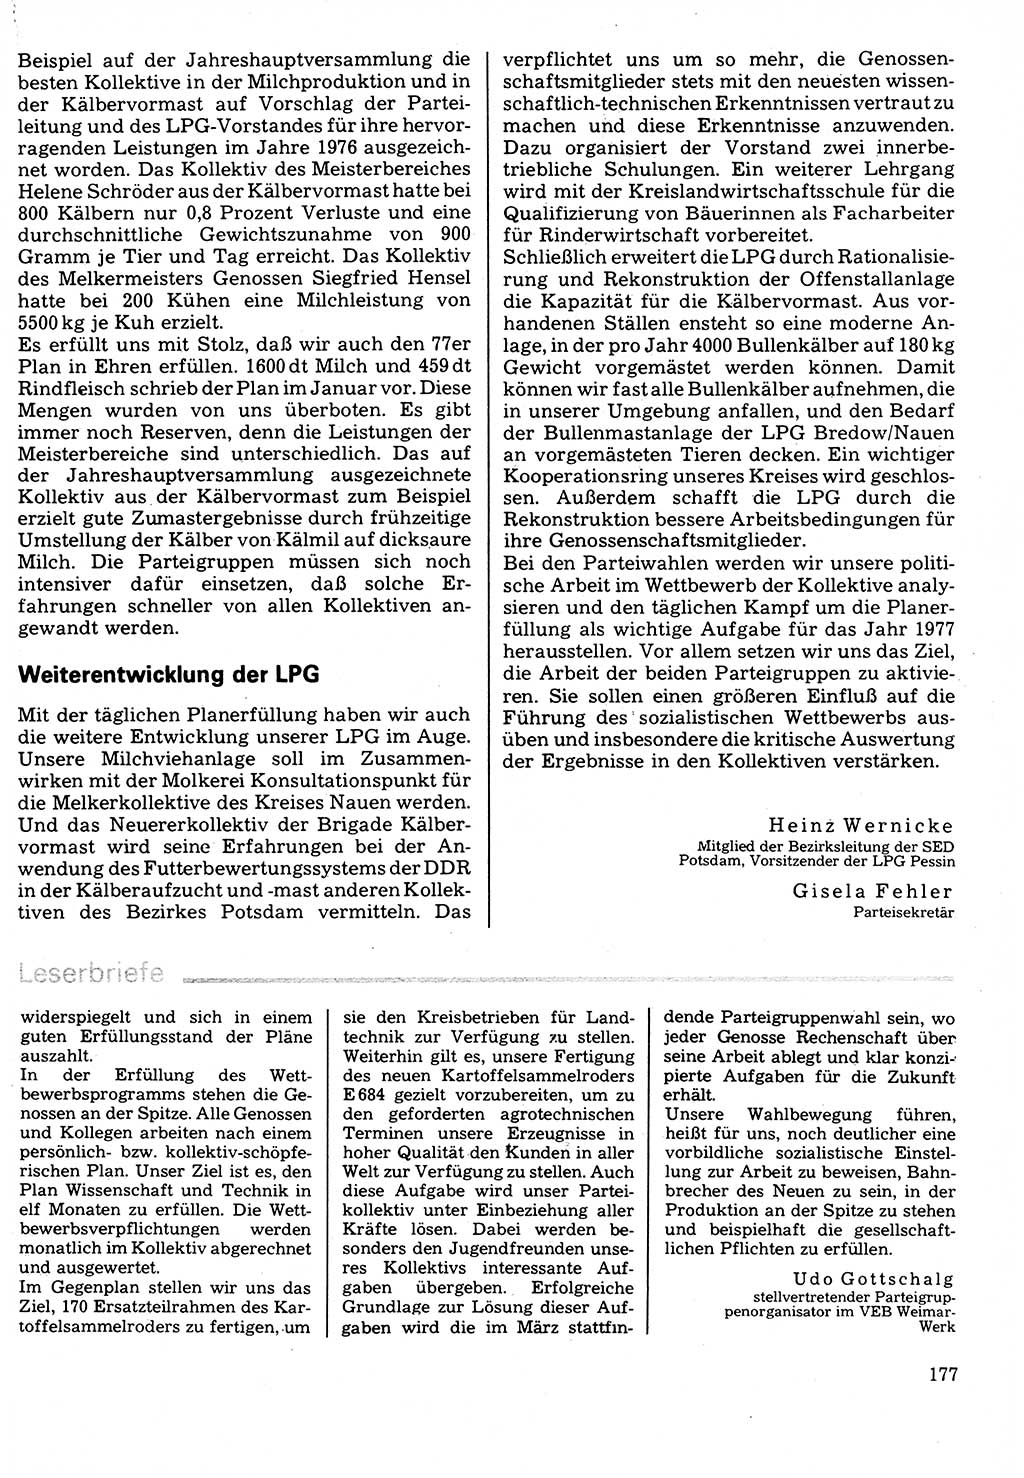 Neuer Weg (NW), Organ des Zentralkomitees (ZK) der SED (Sozialistische Einheitspartei Deutschlands) für Fragen des Parteilebens, 32. Jahrgang [Deutsche Demokratische Republik (DDR)] 1977, Seite 177 (NW ZK SED DDR 1977, S. 177)